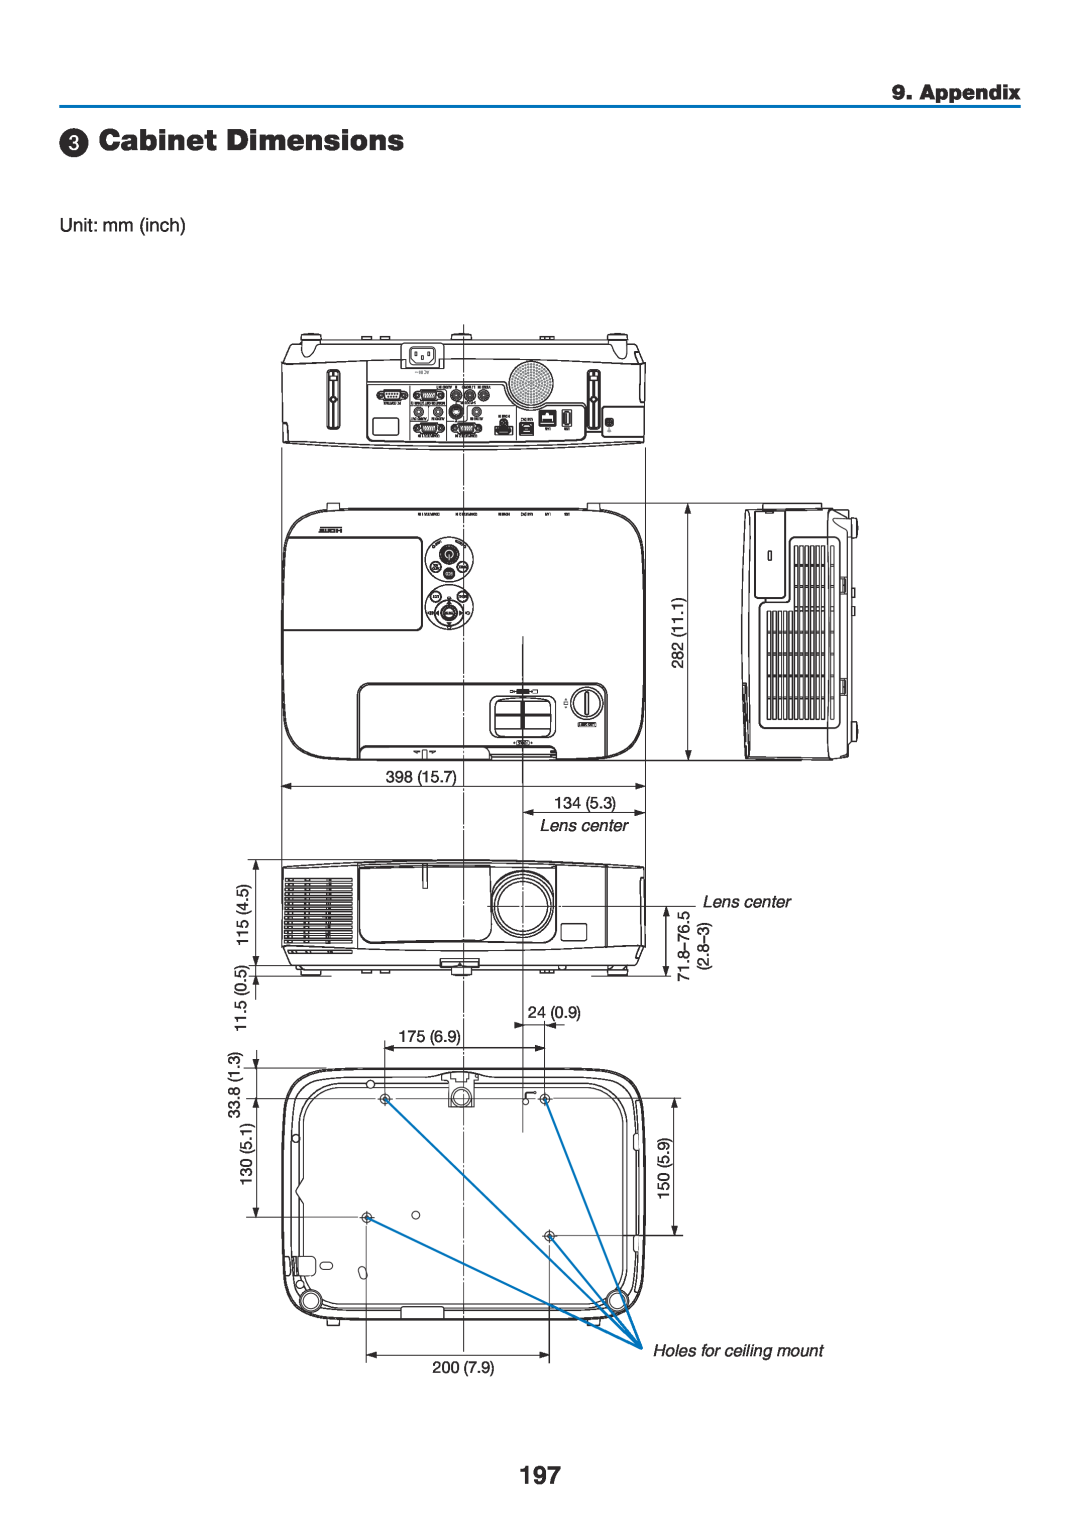 NEC NP-P350W, NP-P420X, NP-P350X user manual  Cabinet Dimensions, Appendix, Holes for ceiling mount, Lens center 